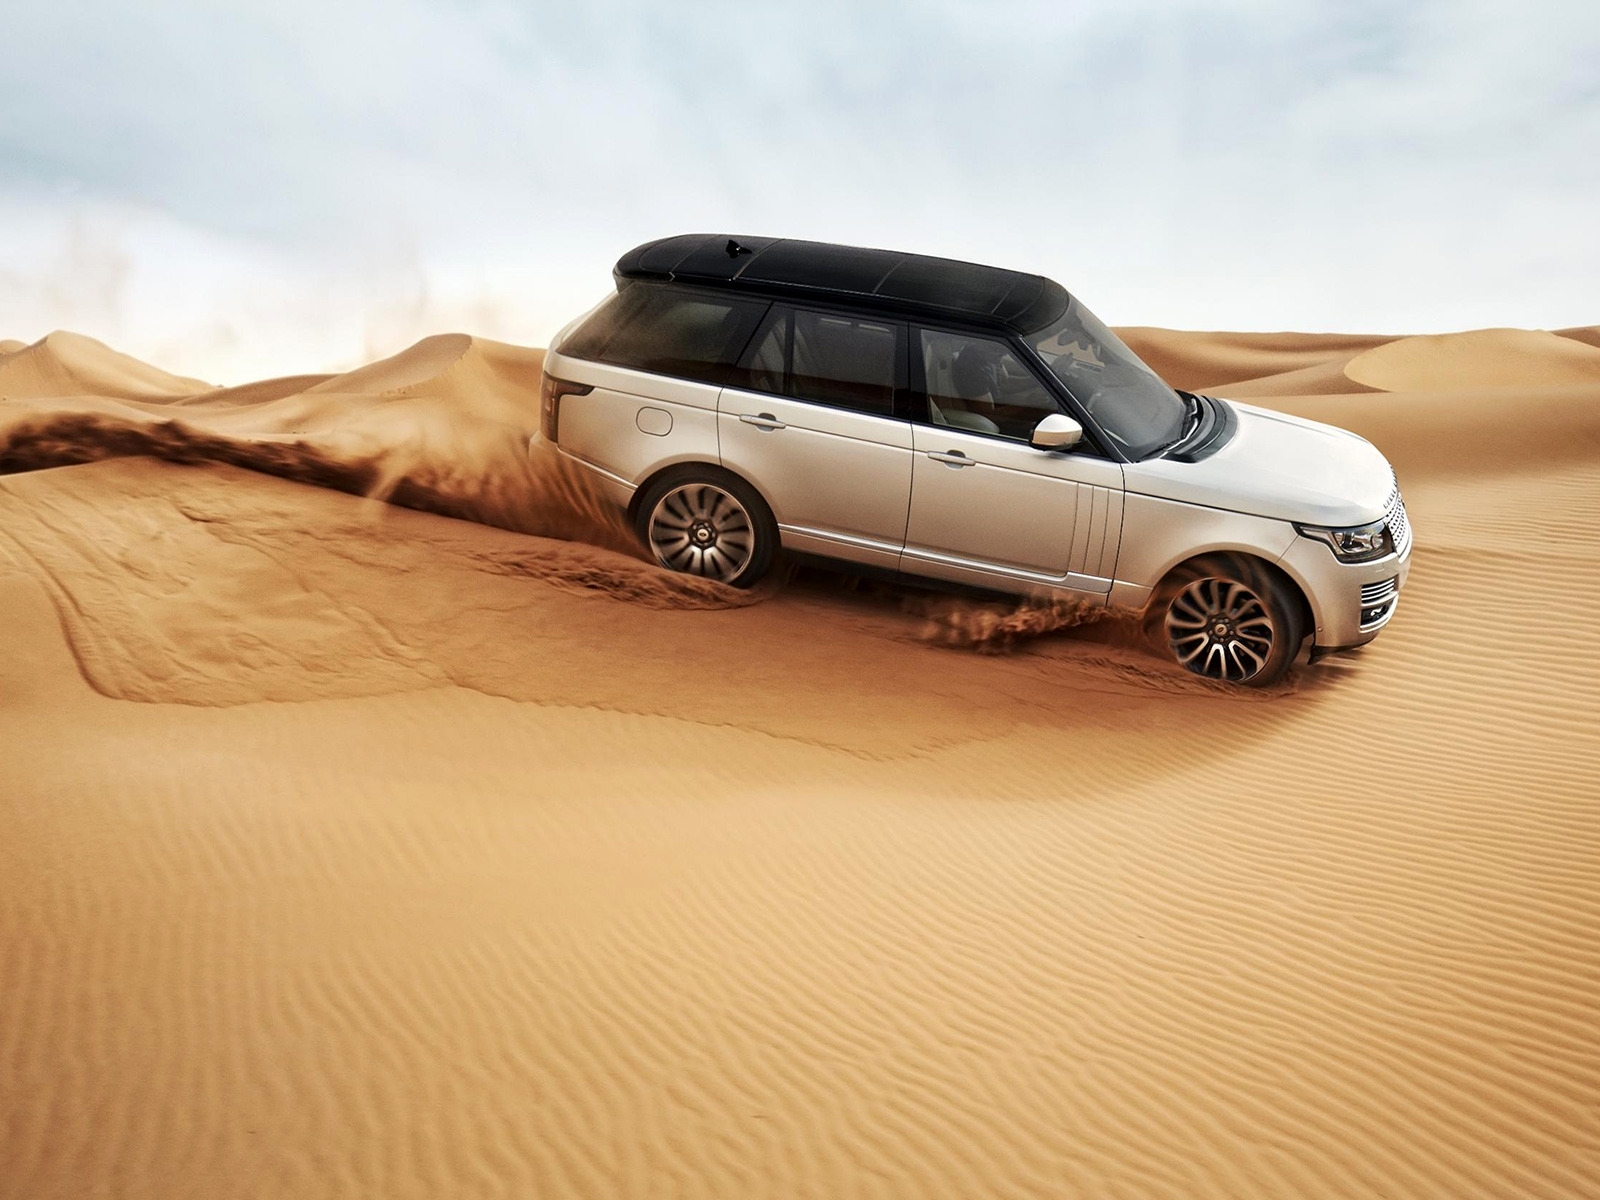 Range Rover in the Desert for 1600 x 1200 resolution